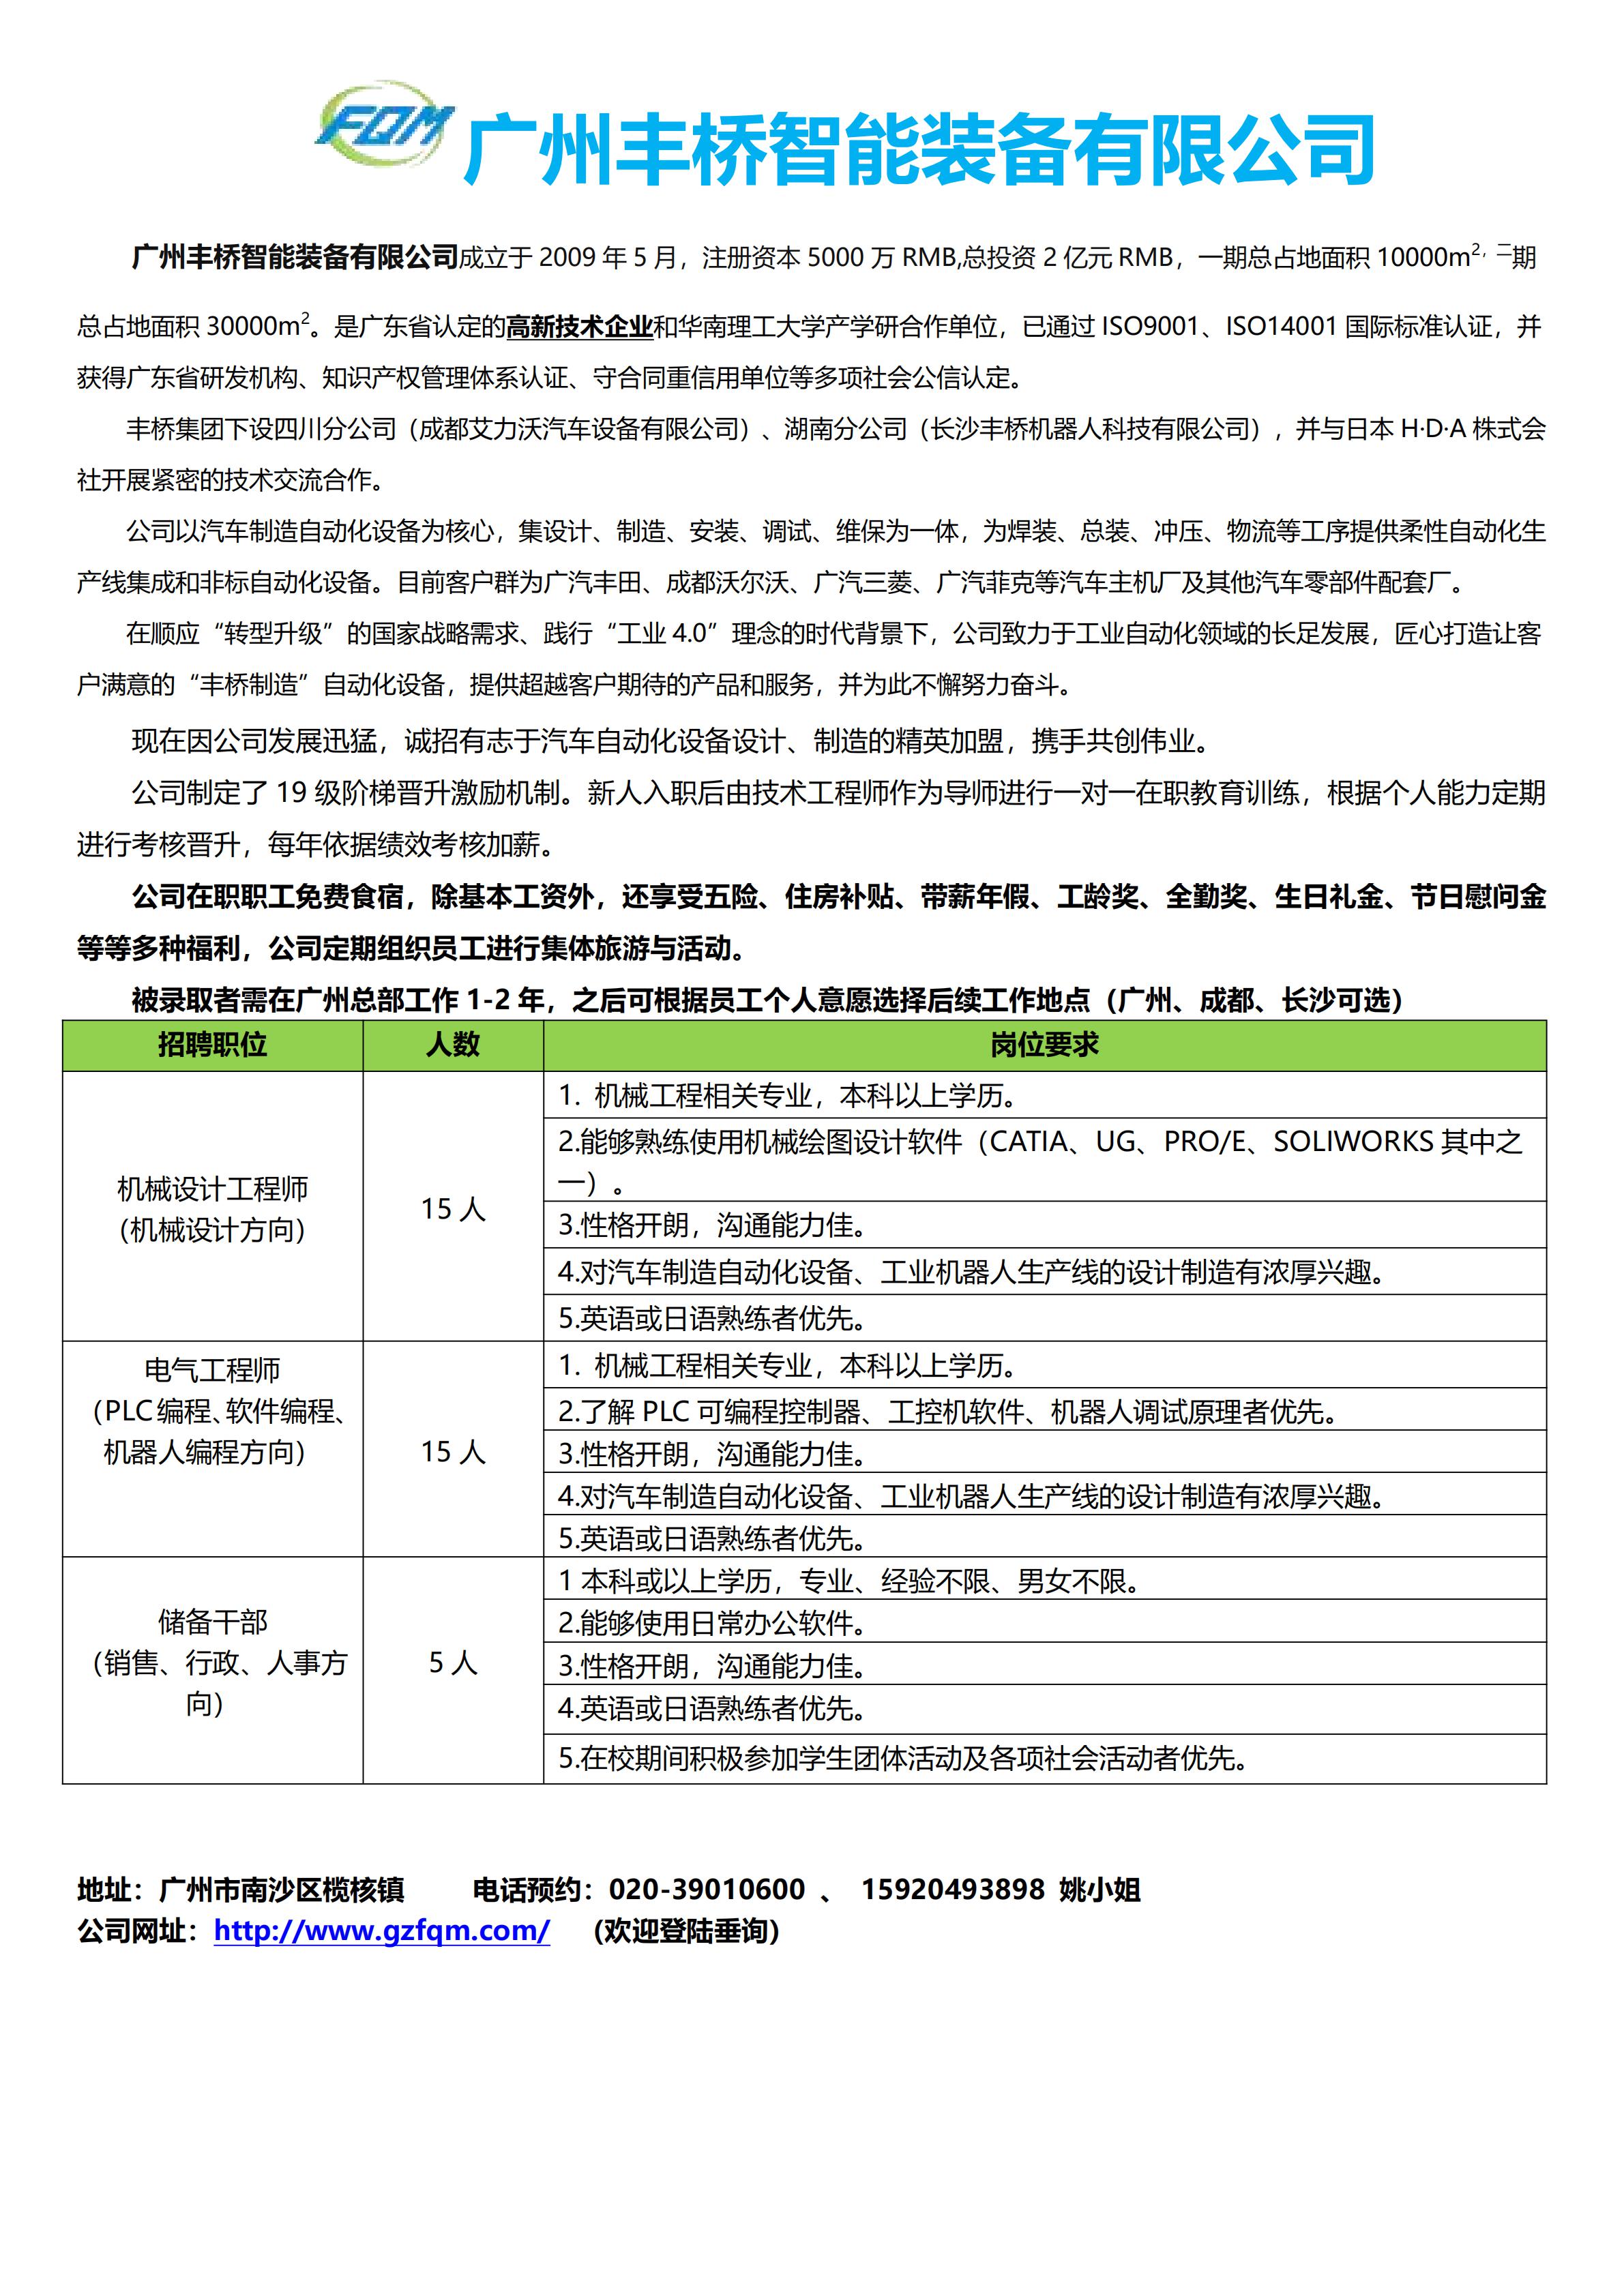 广州丰桥智能装备有限公司校园招聘简章2020_00.jpg